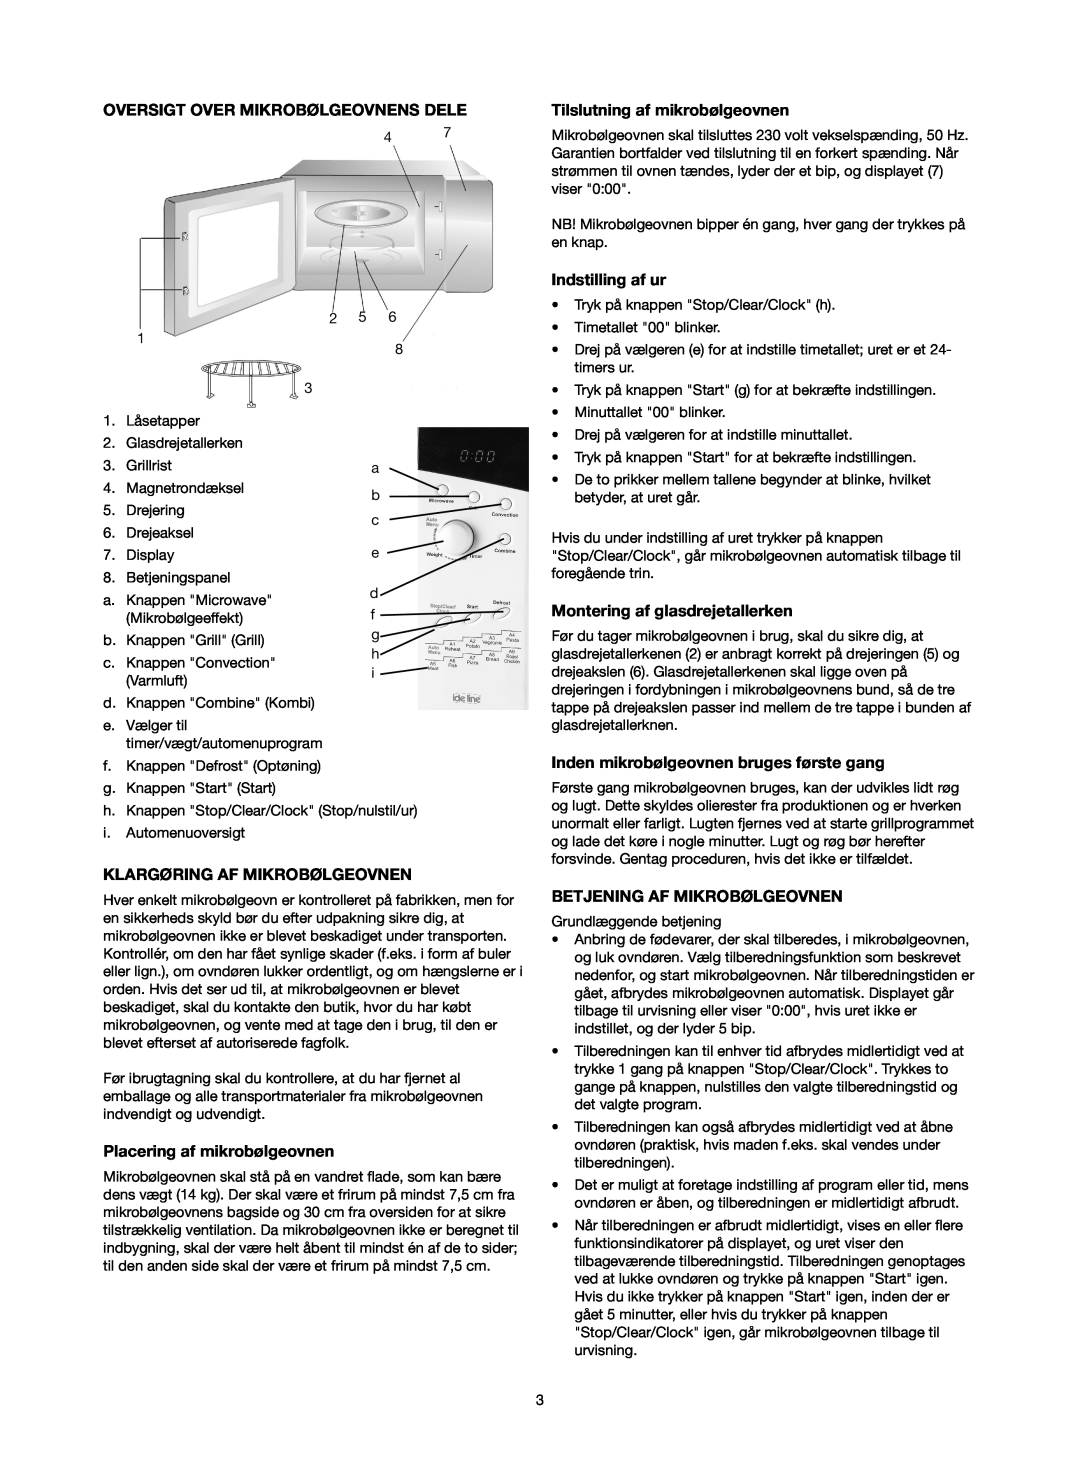 Melissa 753-130 manual Oversigt Over Mikrobølgeovnens Dele, Klargøring Af Mikrobølgeovnen, Tilslutning af mikrobølgeovnen 